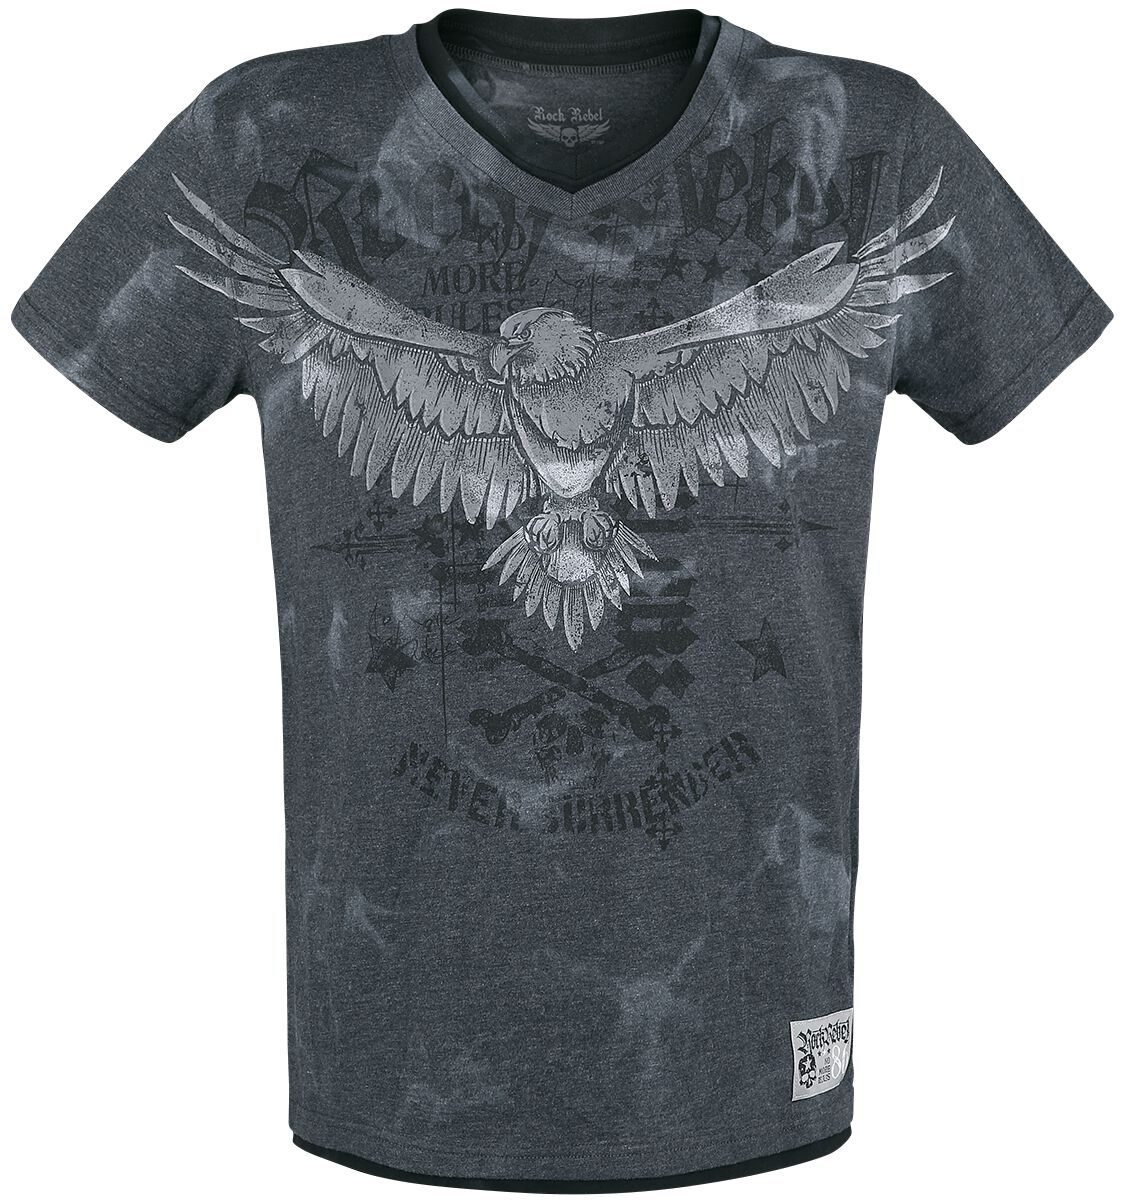 Rock Rebel by EMP - Rock T-Shirt - T-Shirt mit Print und V-Ausschnitt - S bis XXL - für Männer - Größe S - grau